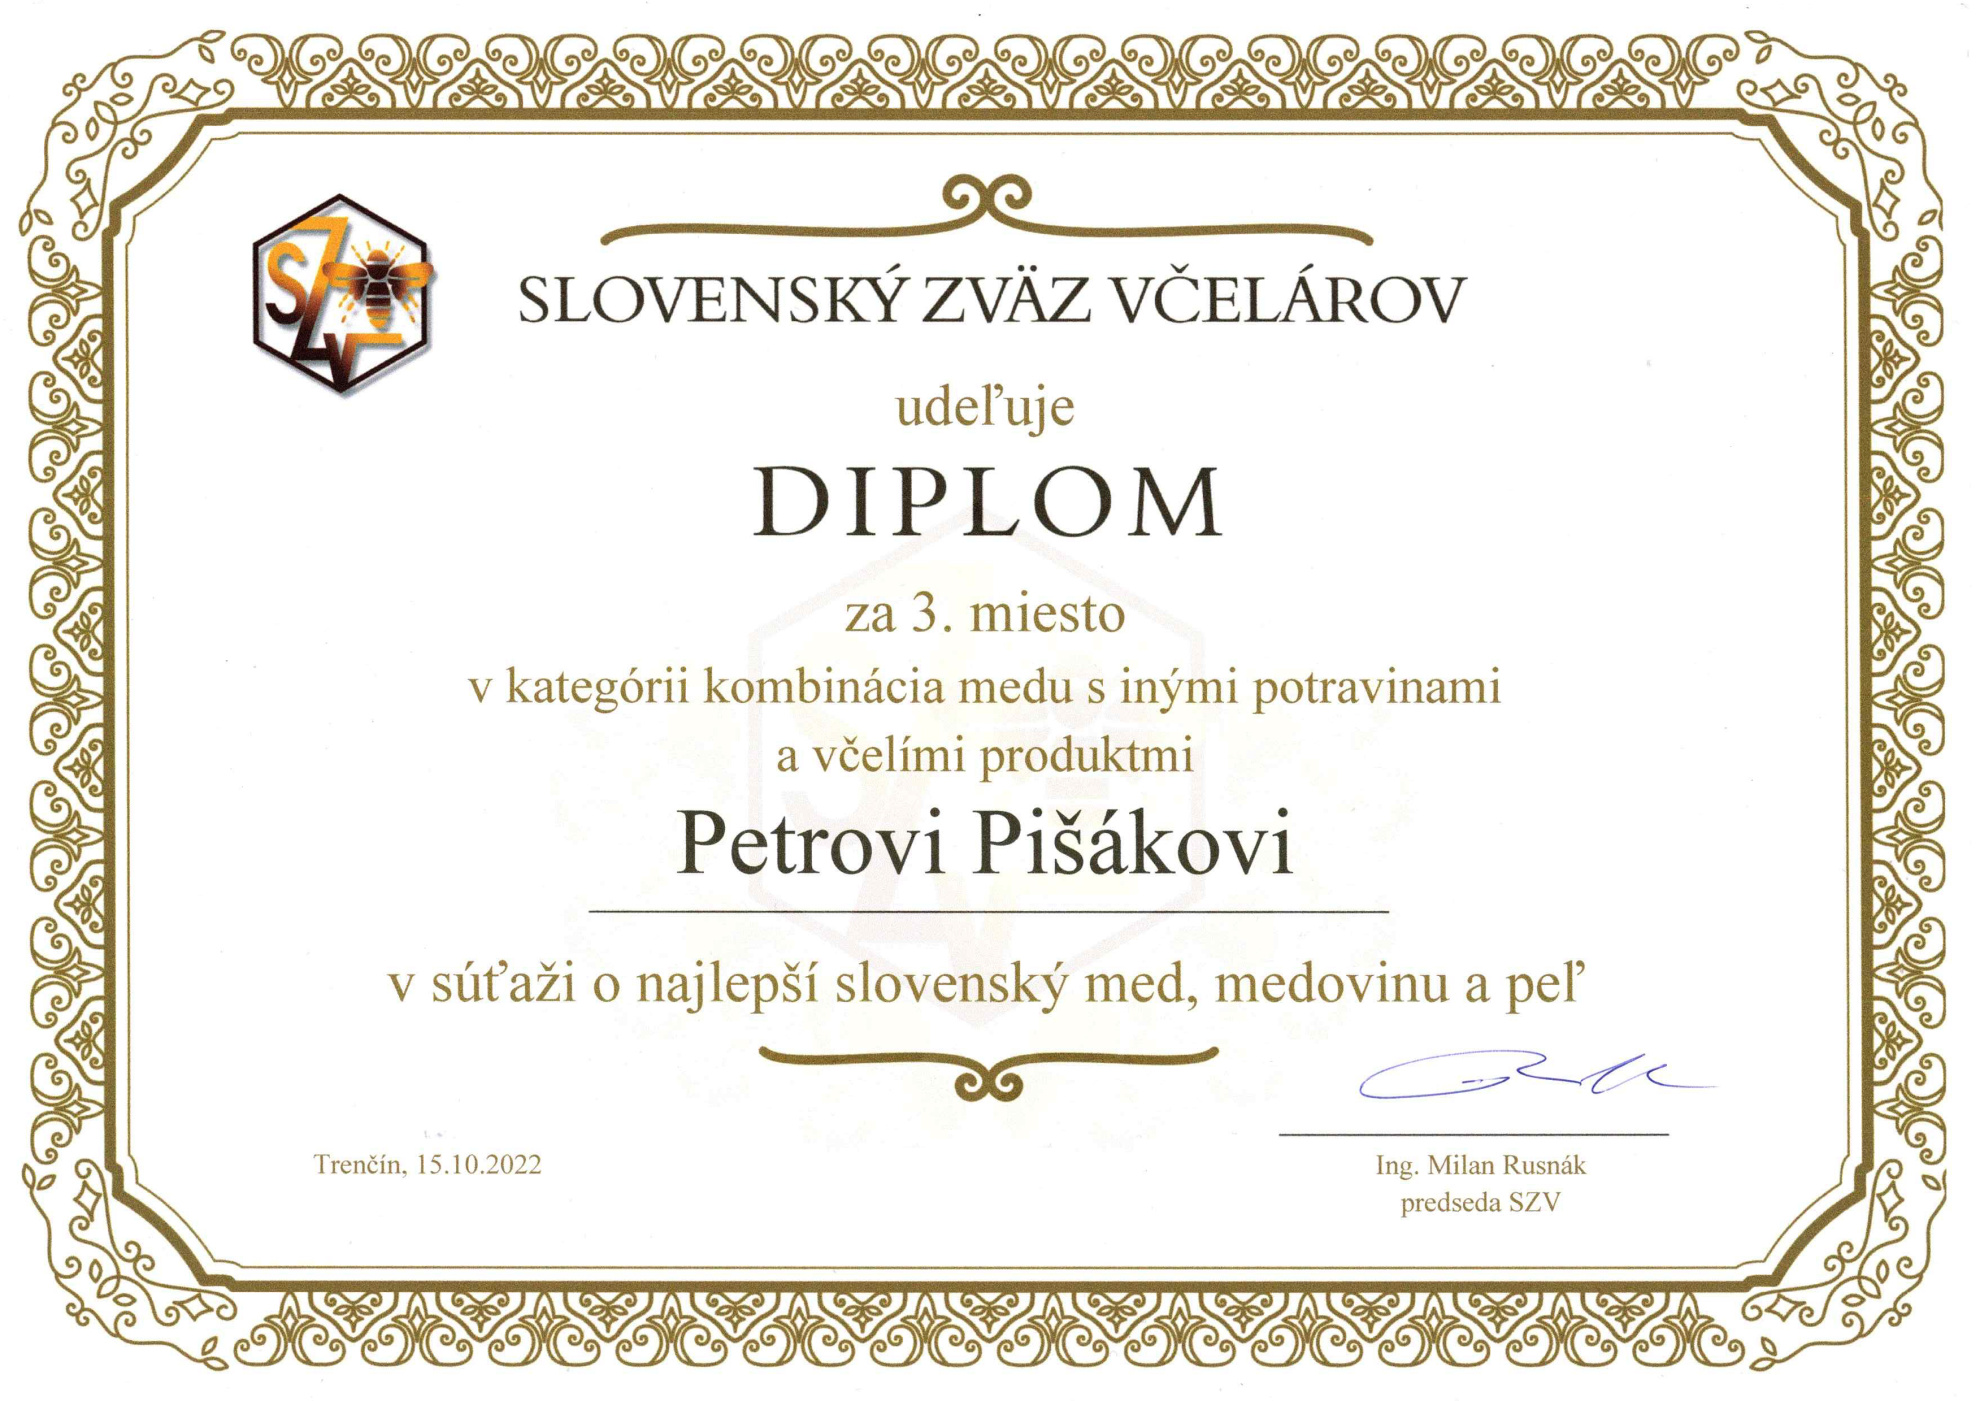 Diplom za 3. miesto v kategórii kombinácia medu s inými potravinami v súťaži o najlepší med na Slovensku v roku 2022 organizovaný Slovenským zväzom včelárov (SZV)